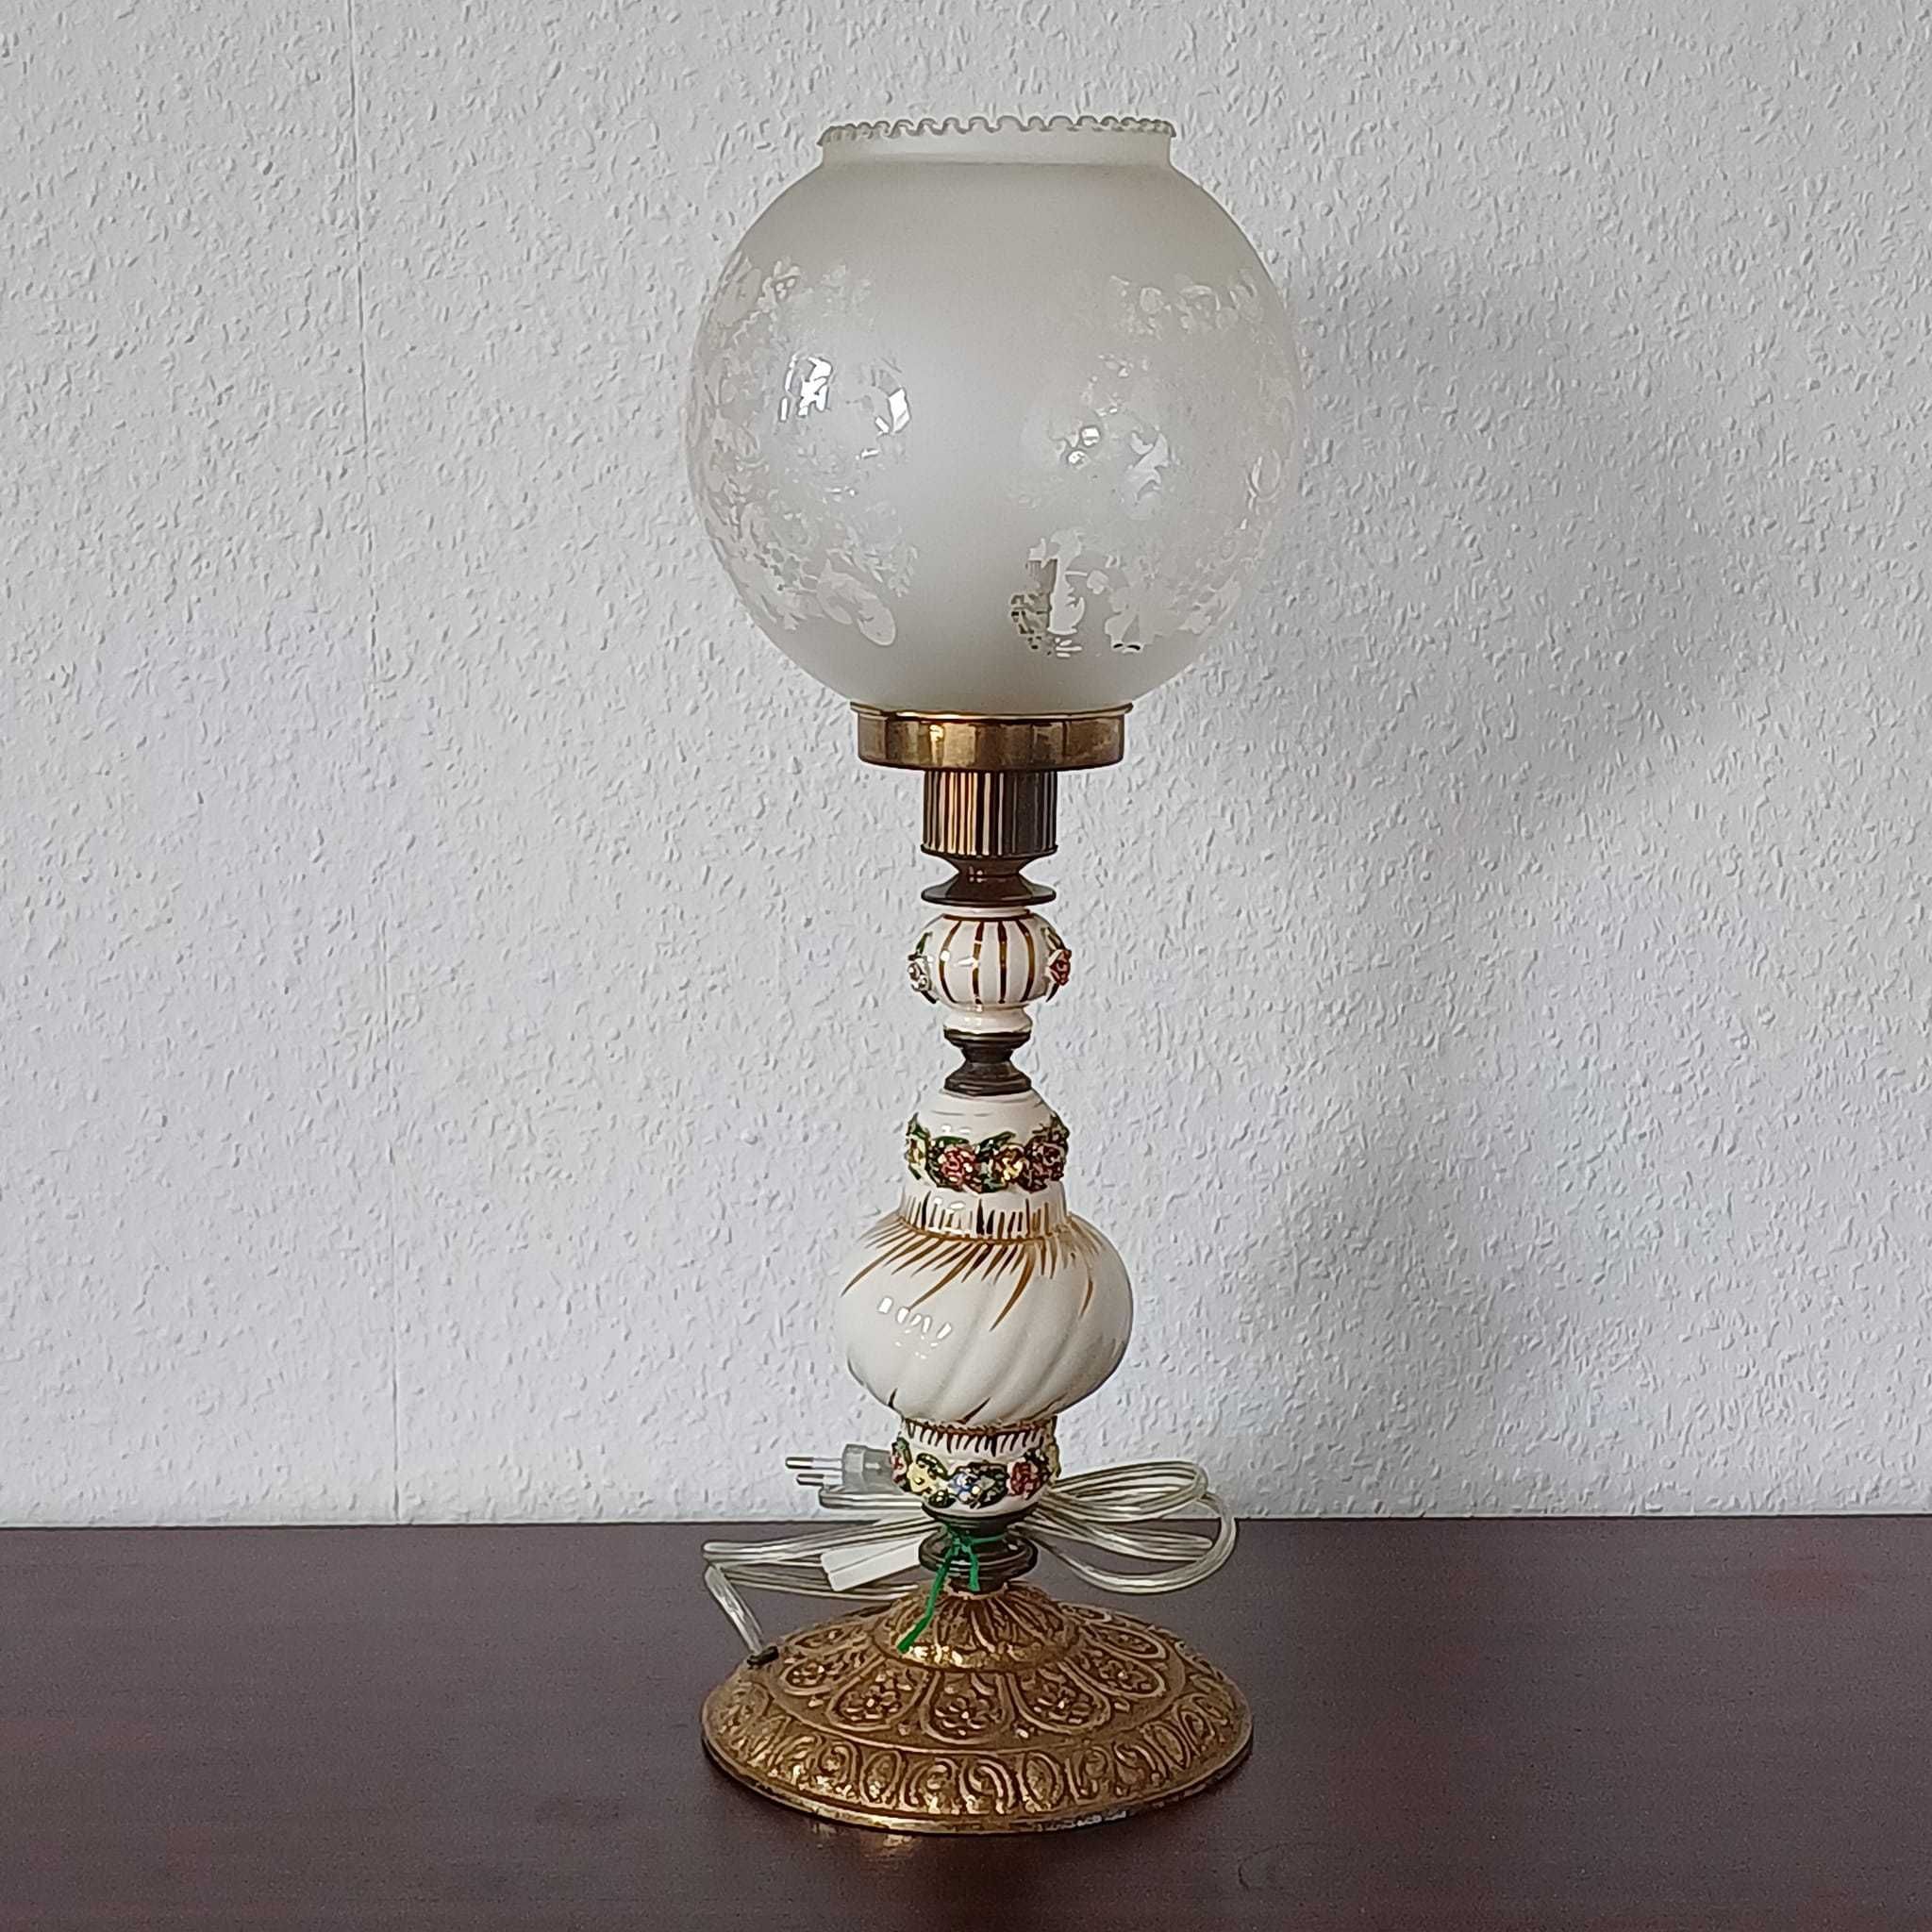 Вінтажна керамічна біла настільна лампа в вікторианському стилі.